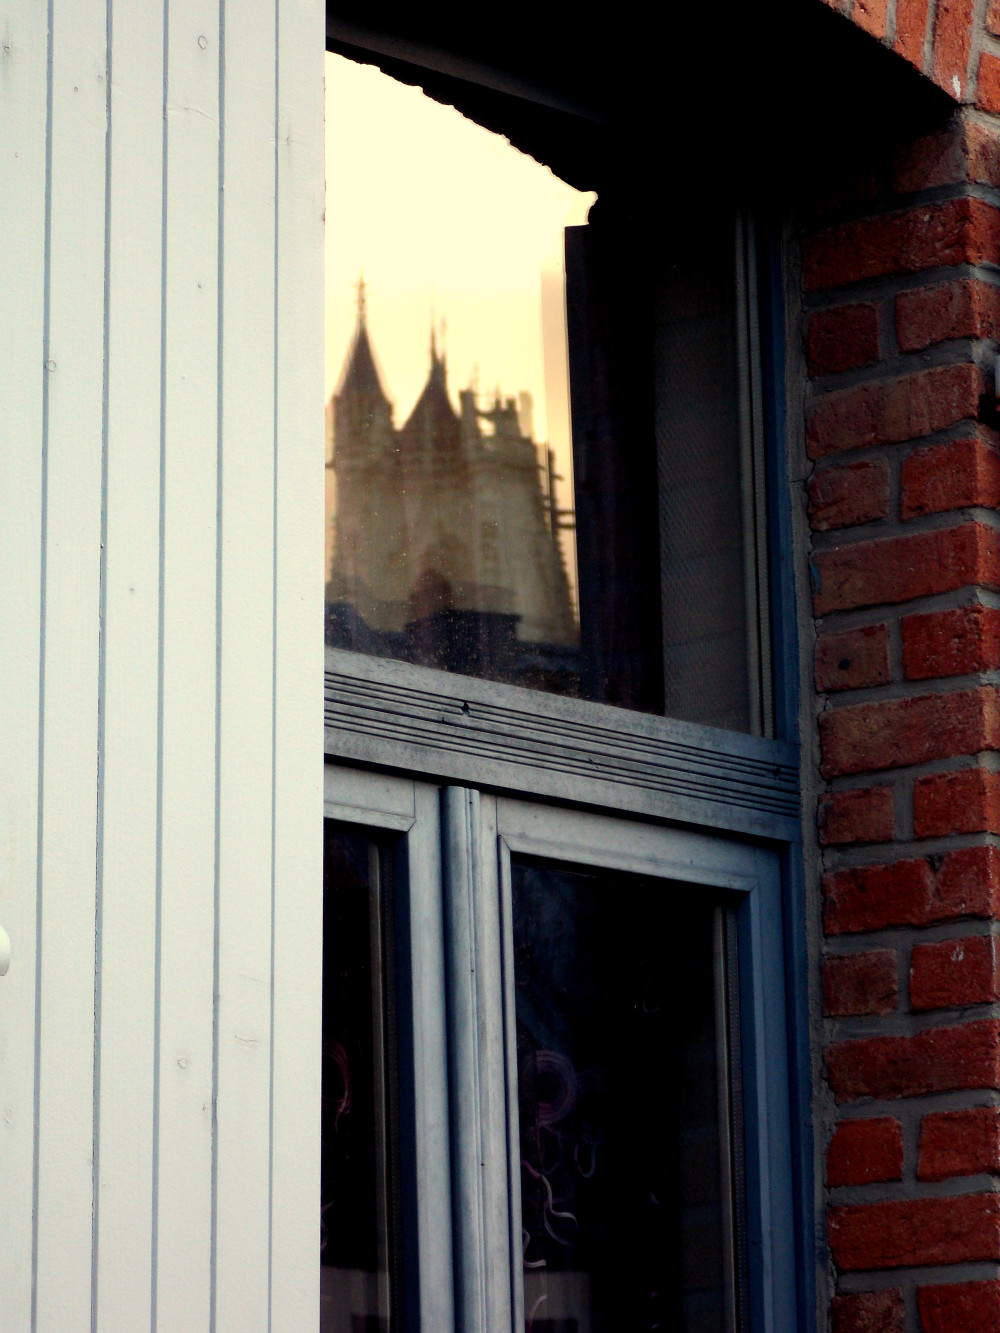 Depuis le quartier Saint Leu (Amiens), reflet sur la fenêtre d'une maison des hauteurs de la cathédrale